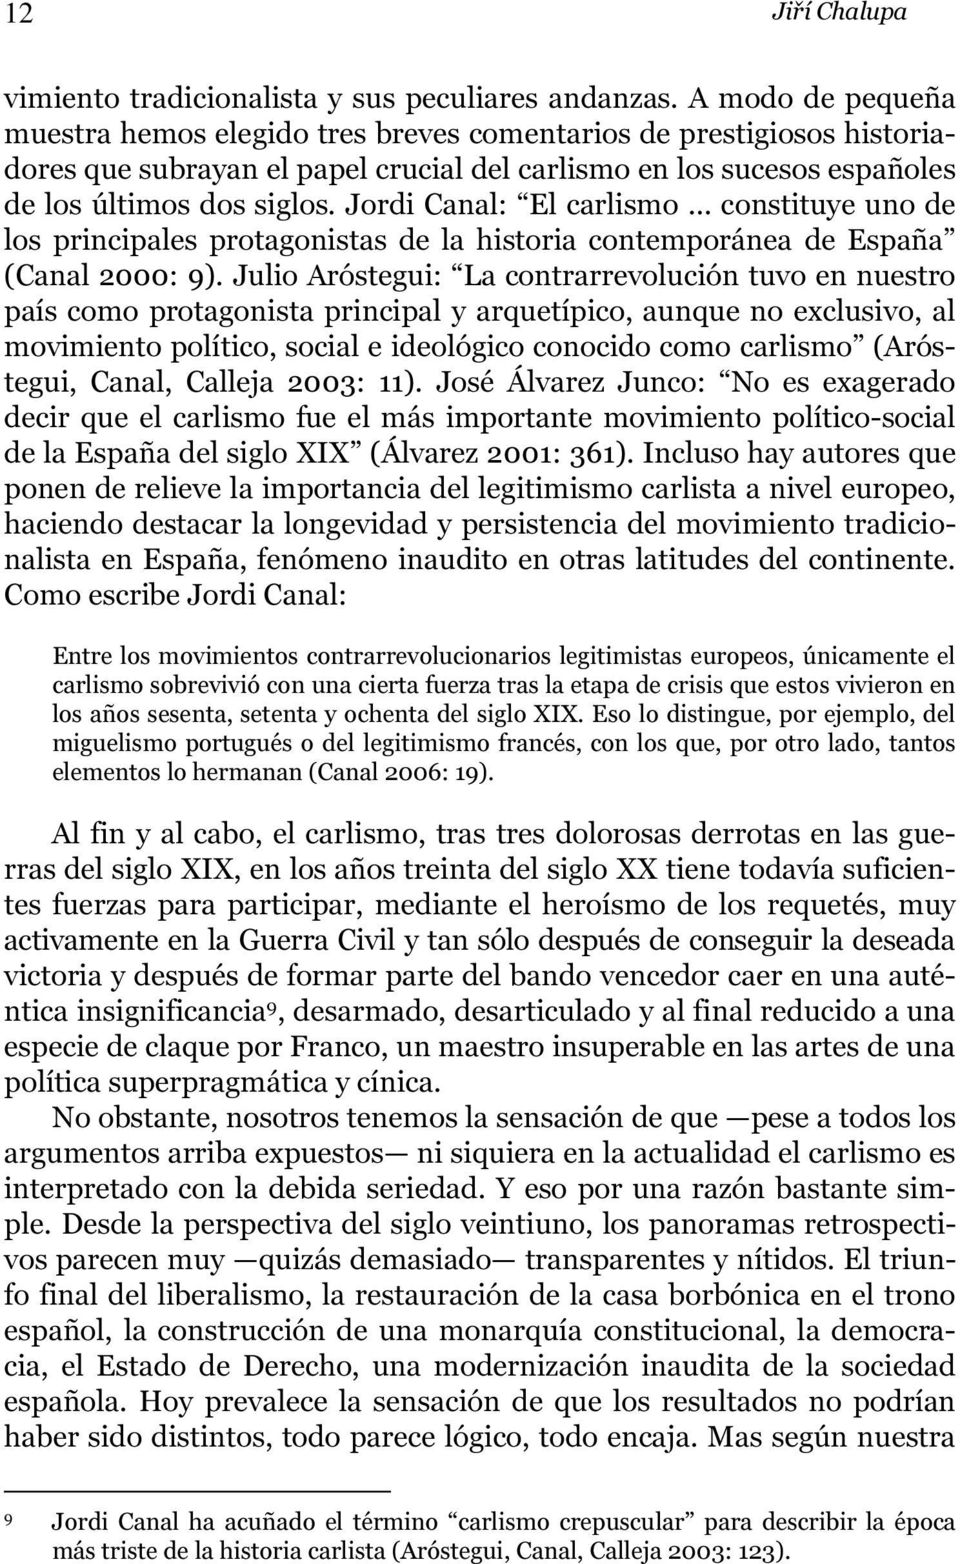 Jordi Canal: El carlismo constituye uno de los principales protagonistas de la historia contemporánea de España (Canal 2000: 9).